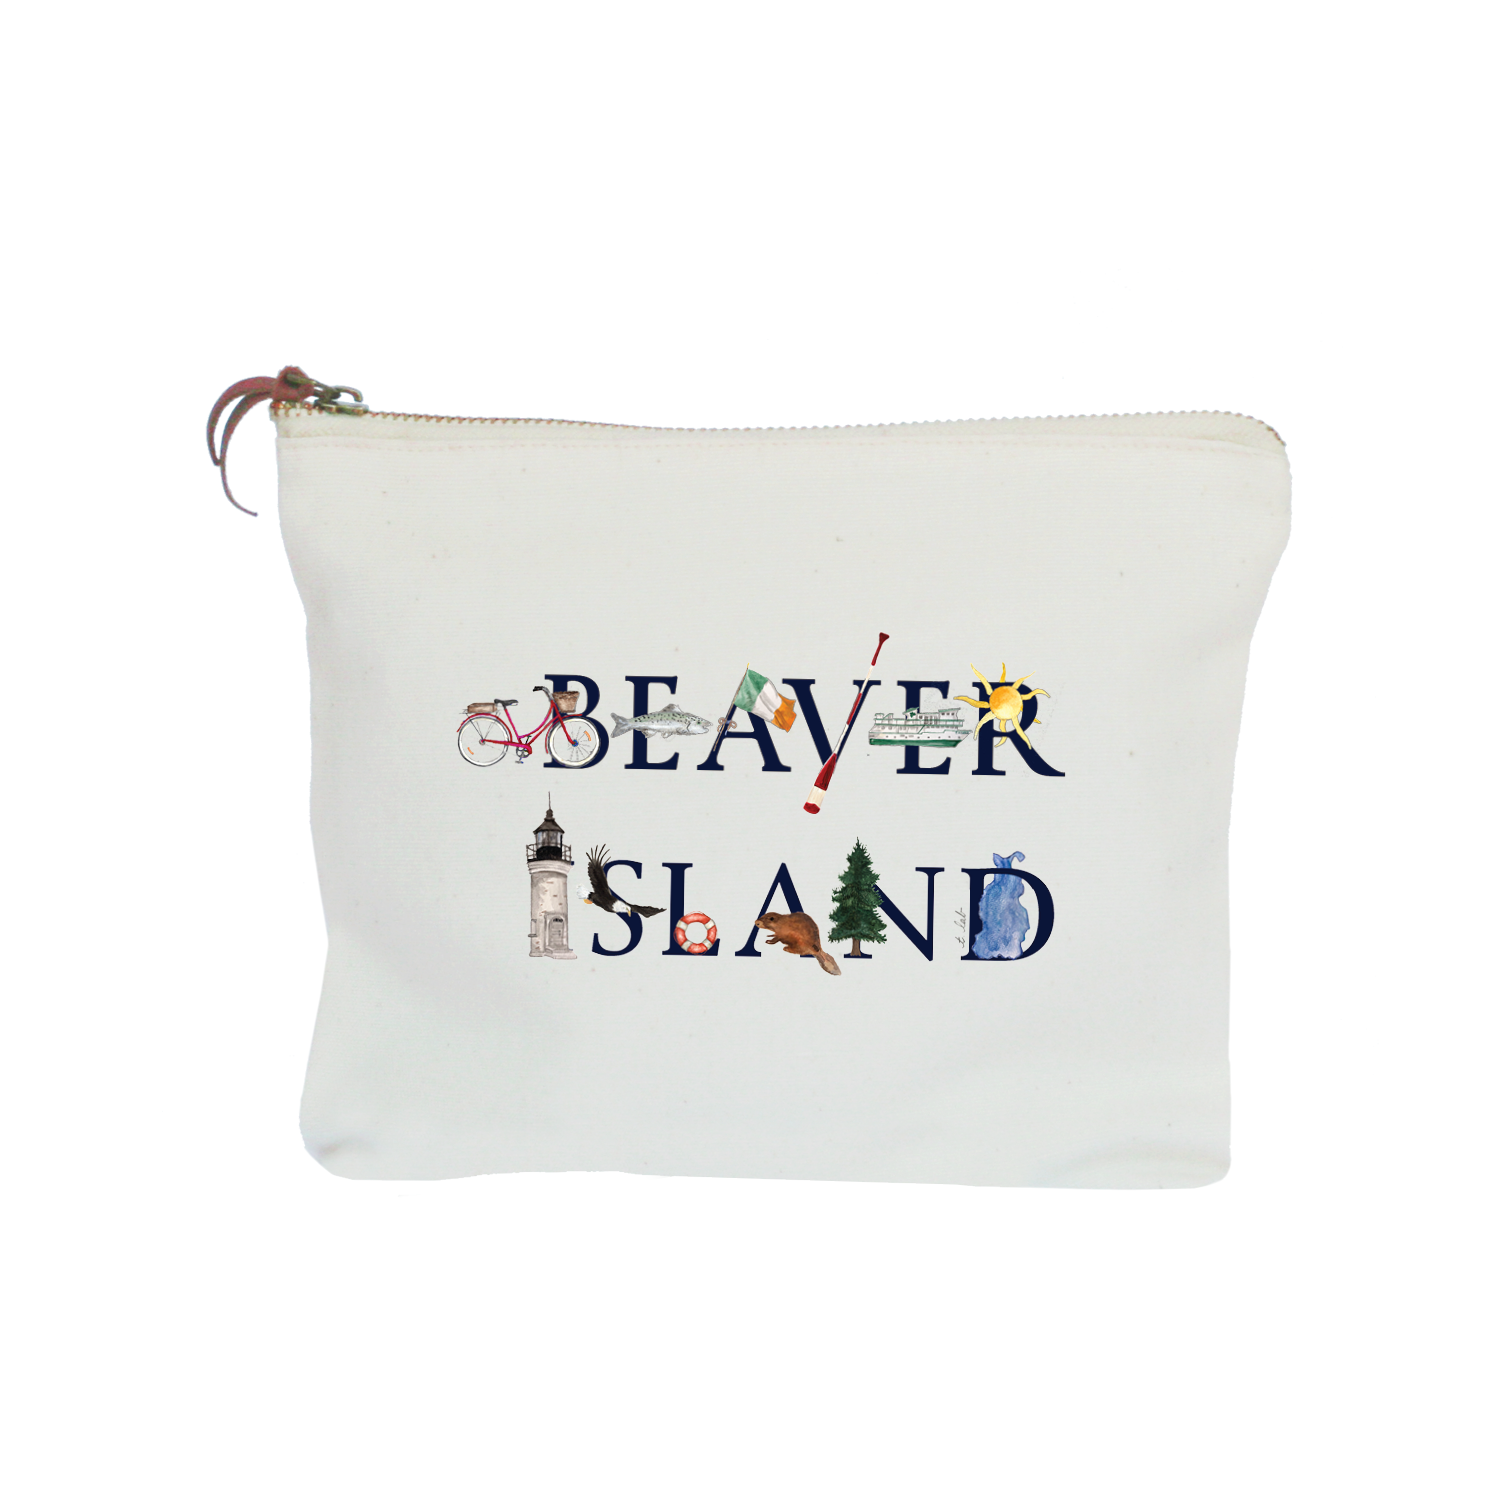 beaver island zipper pouch